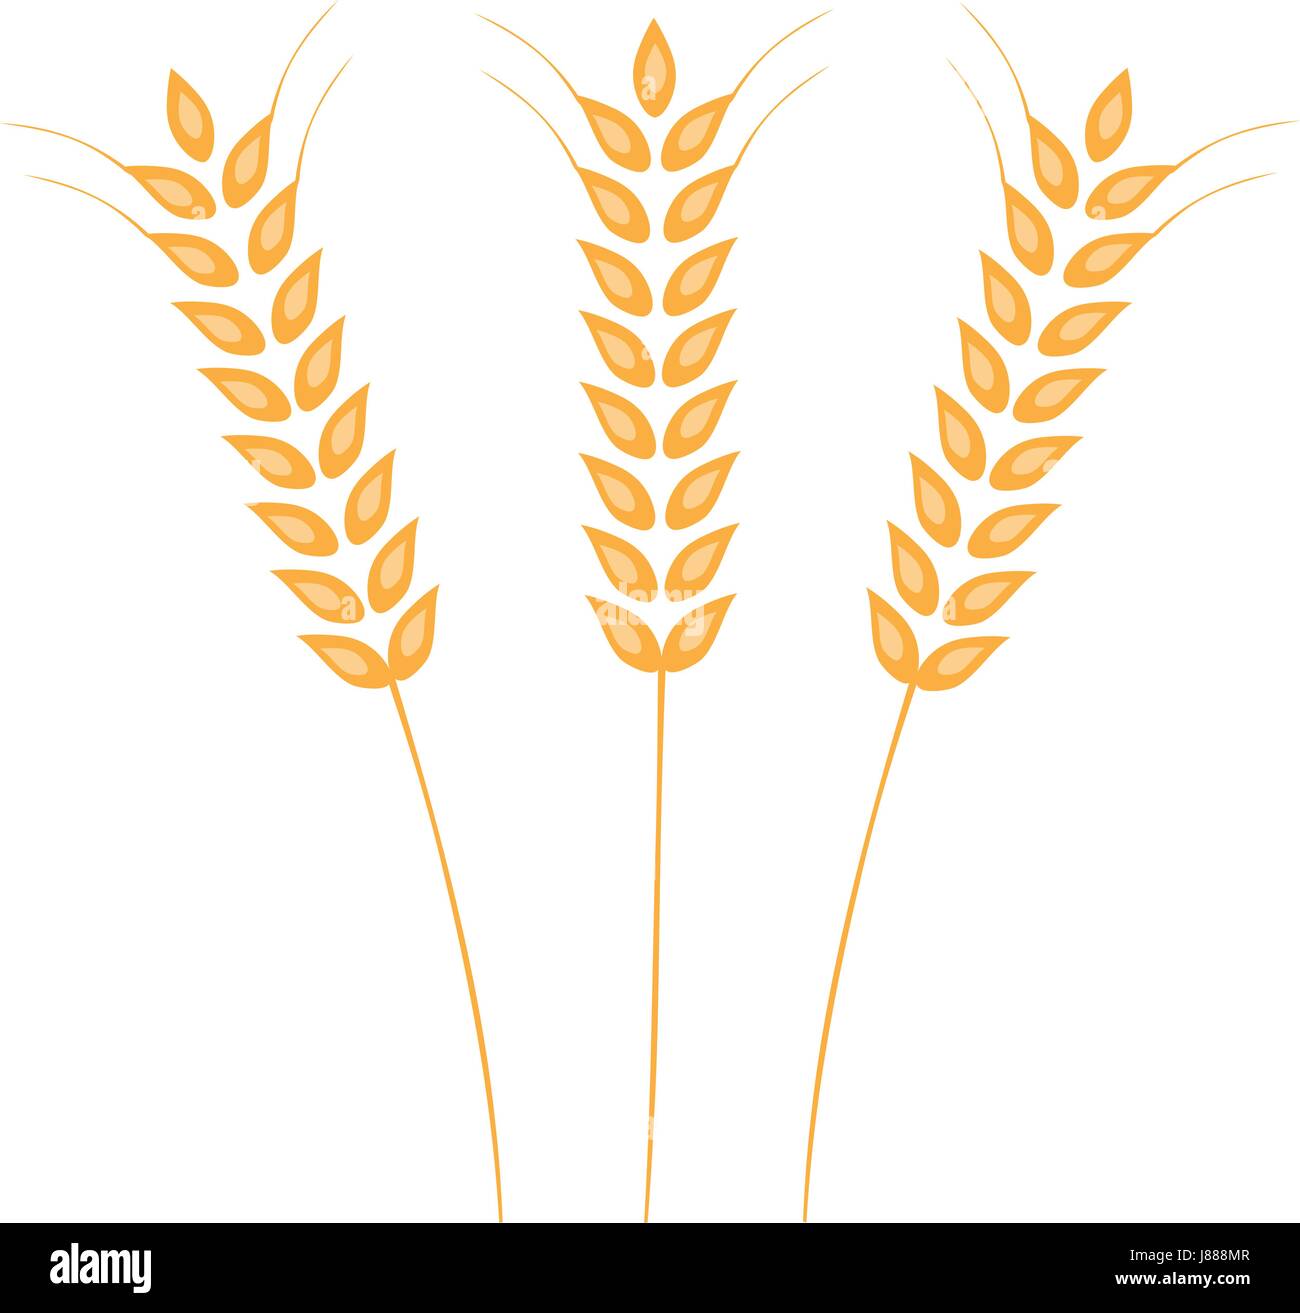 Vektor-Illustration der Ohren von Weizen, Gerste oder Roggen. Ideal für die Verpackung von Brot. Vektor Icon. Stock Vektor